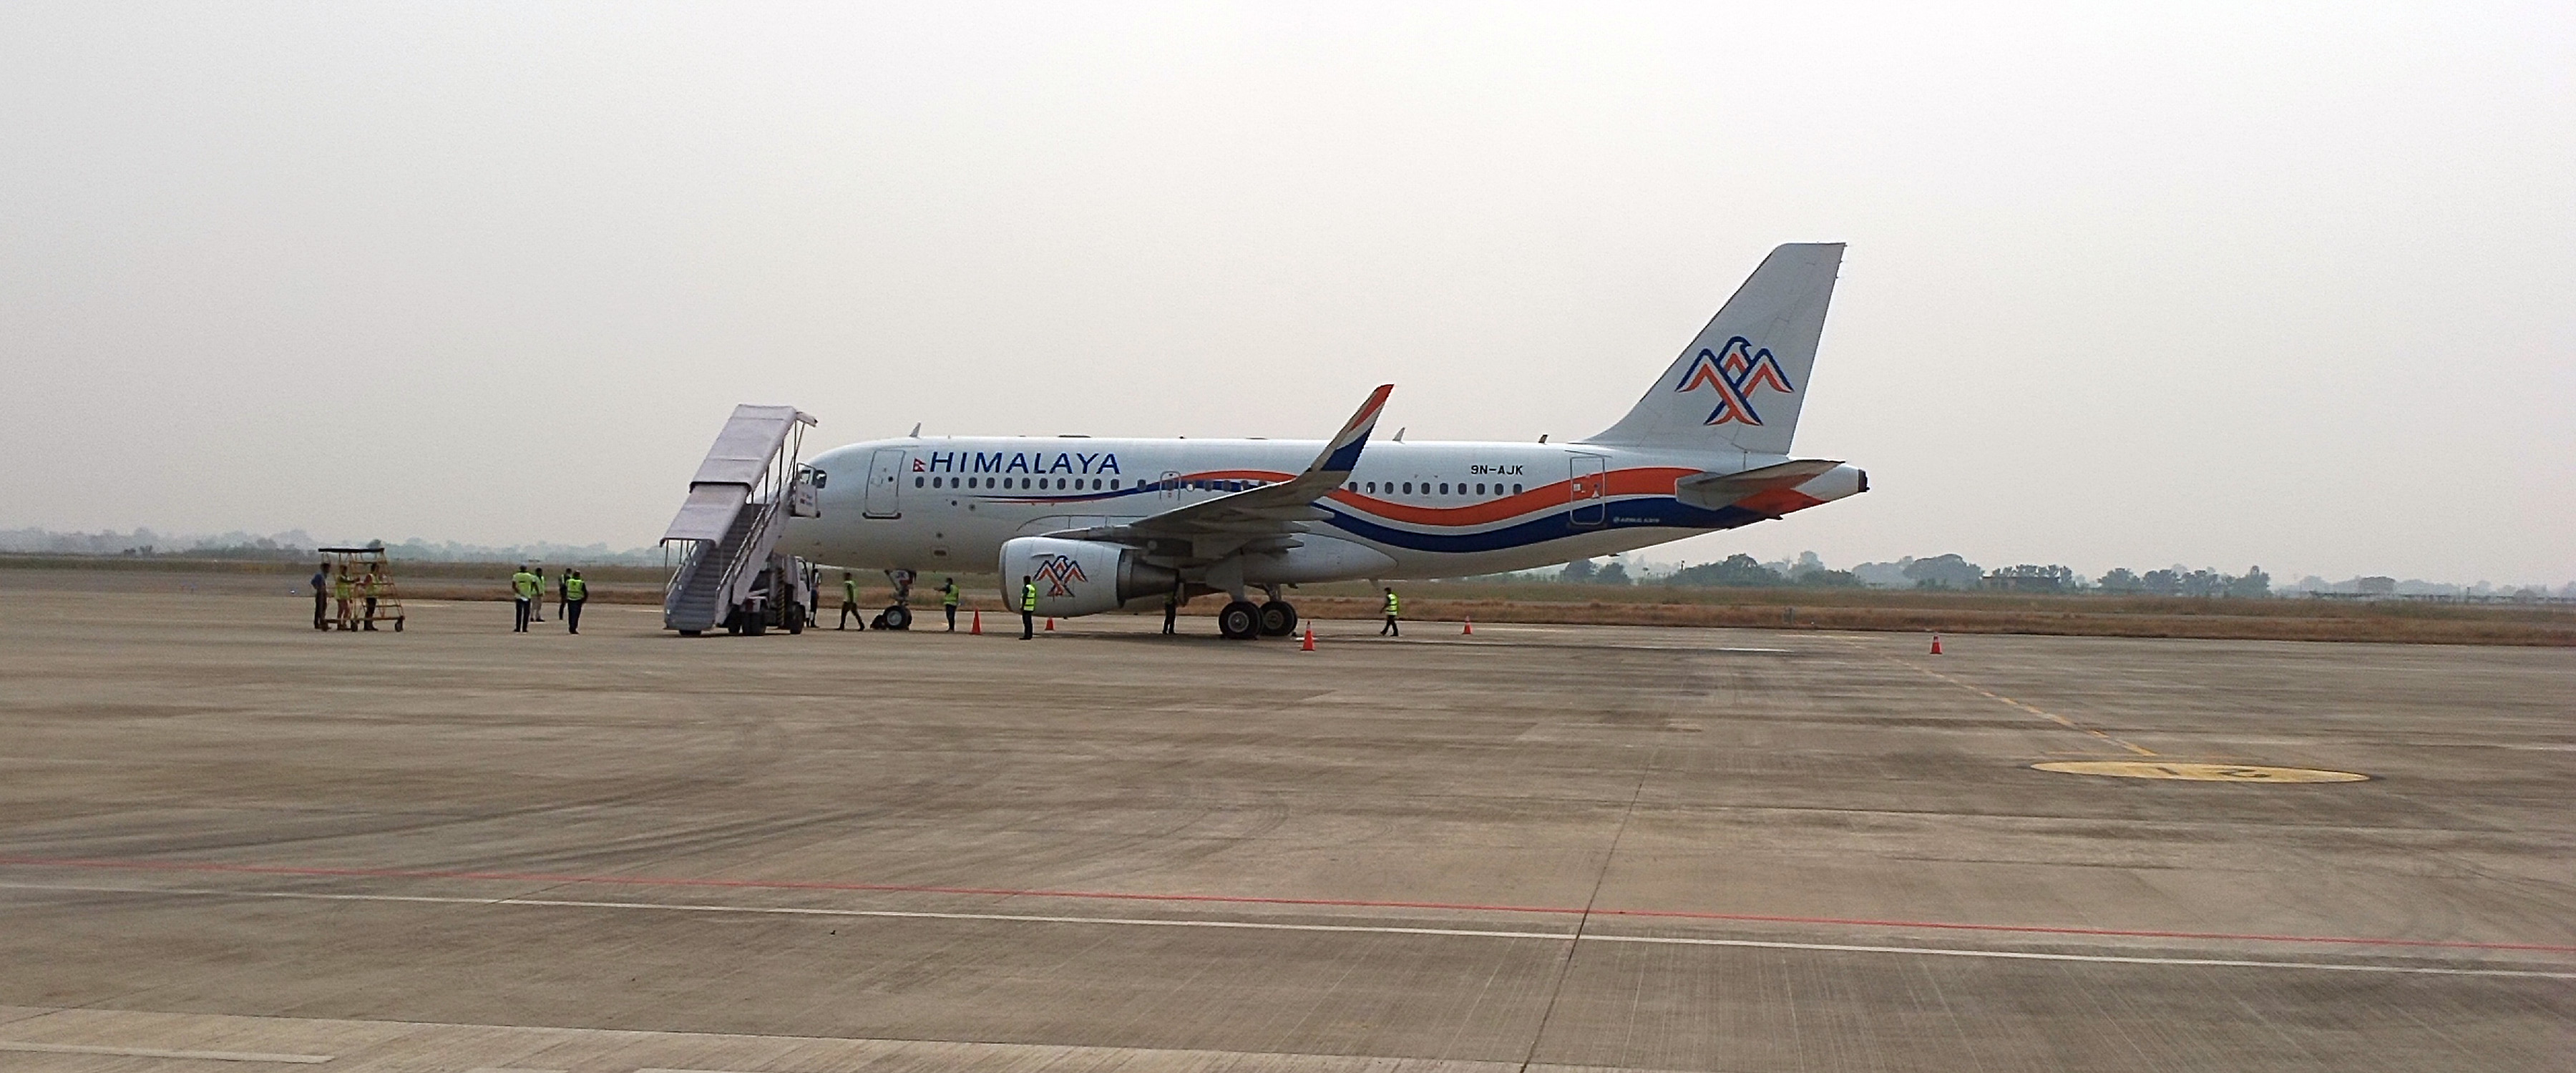 हिमालय एयरलाइन्सले सुरु गर्‍यो भैरहवाबाट चार्टर्ड उडान, विमानको चाप बढ्दै जाने 